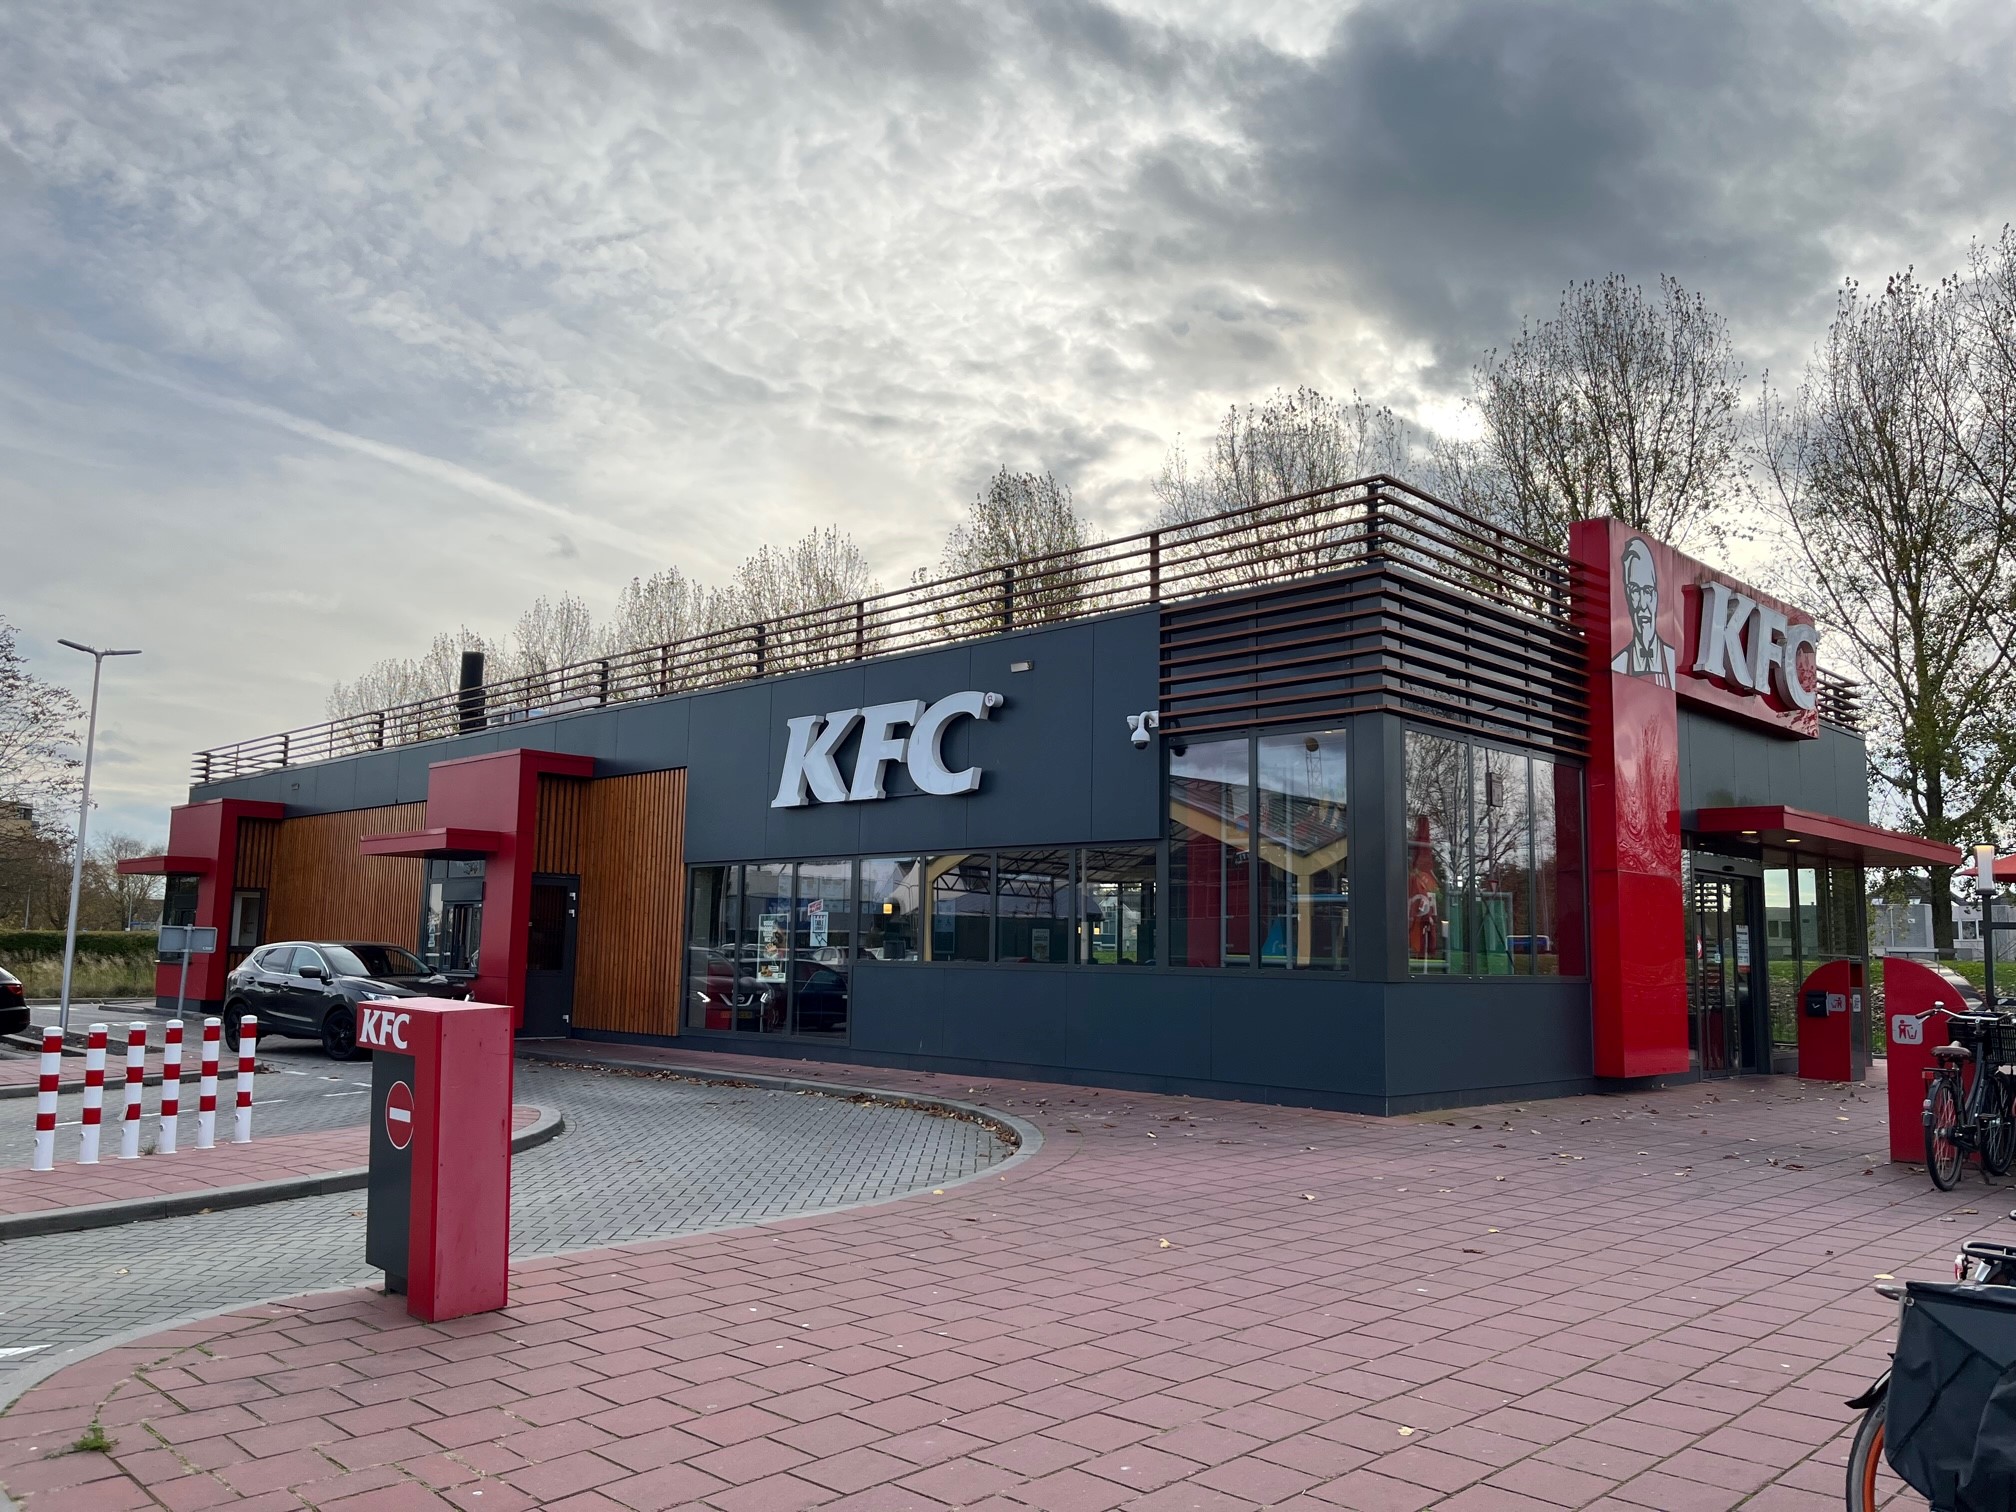 ESG STRATGIE EN AANPAK VOOR COLLINS FOODS EUROPE (KFC)